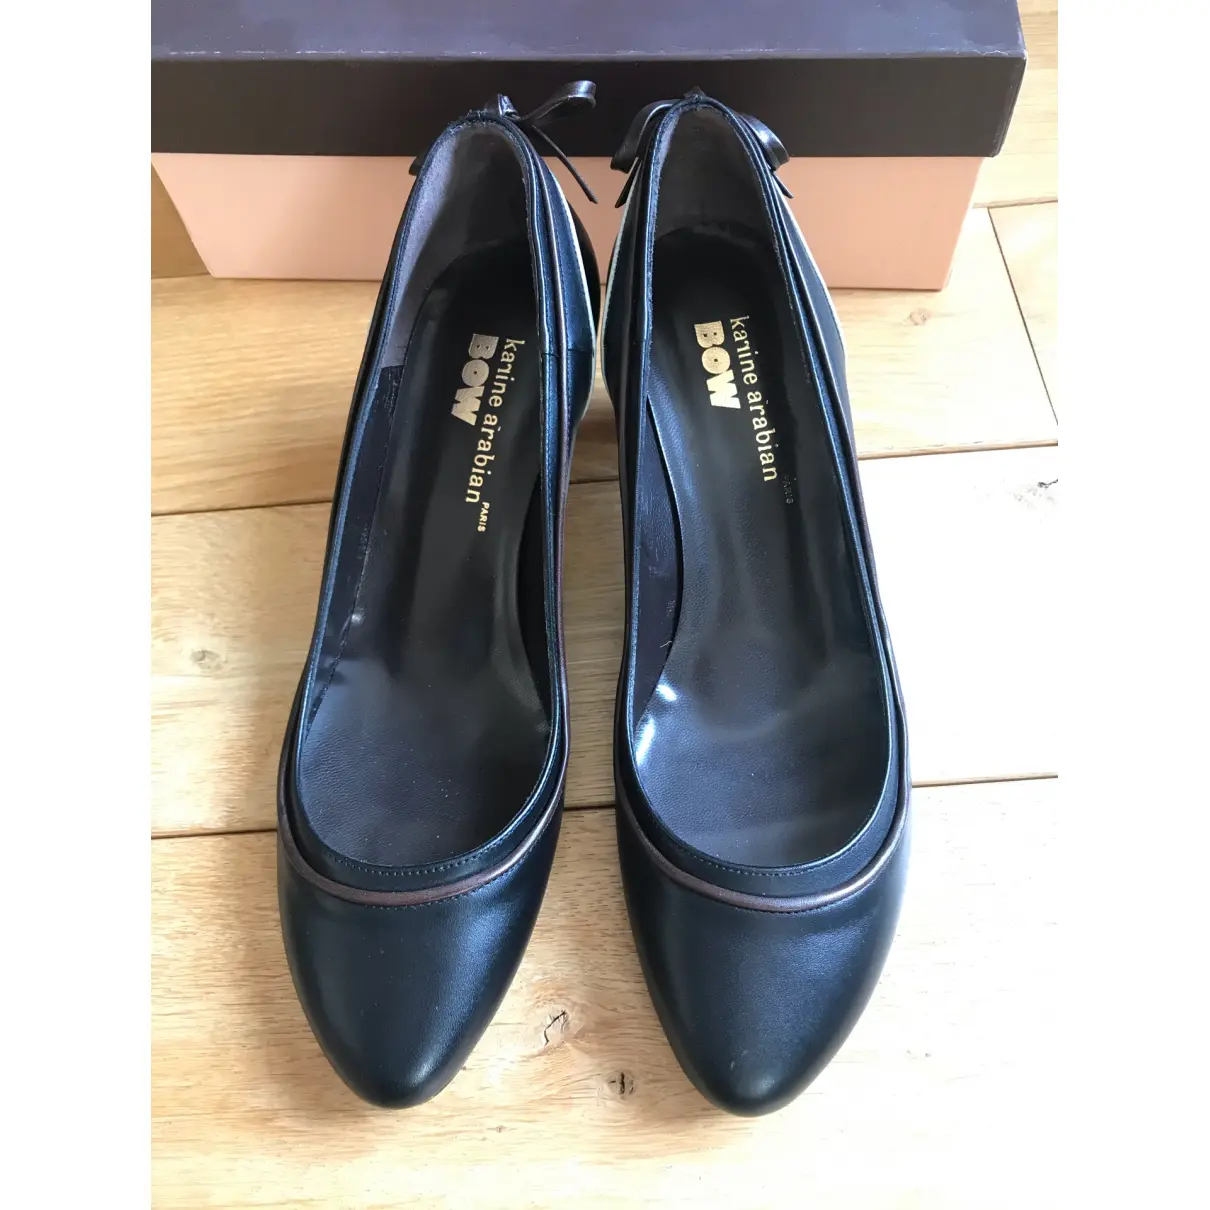 Buy Karine Arabian Leather heels online